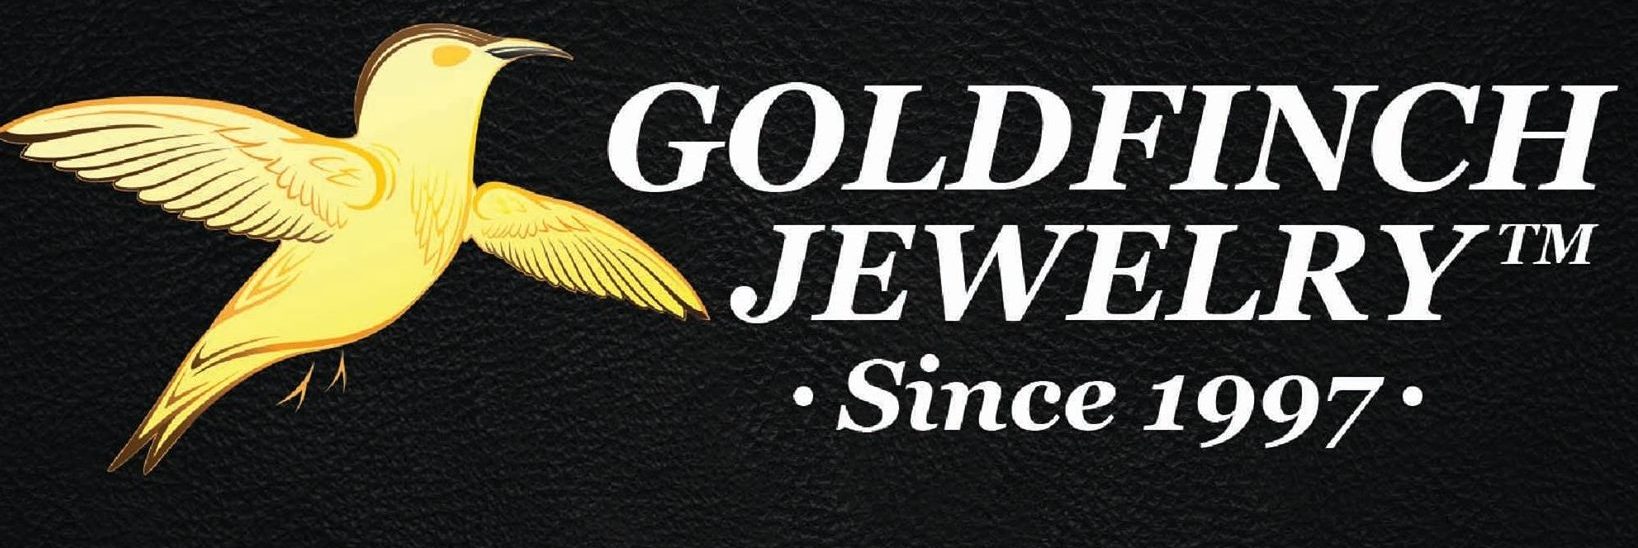 Goldfinch jewelry